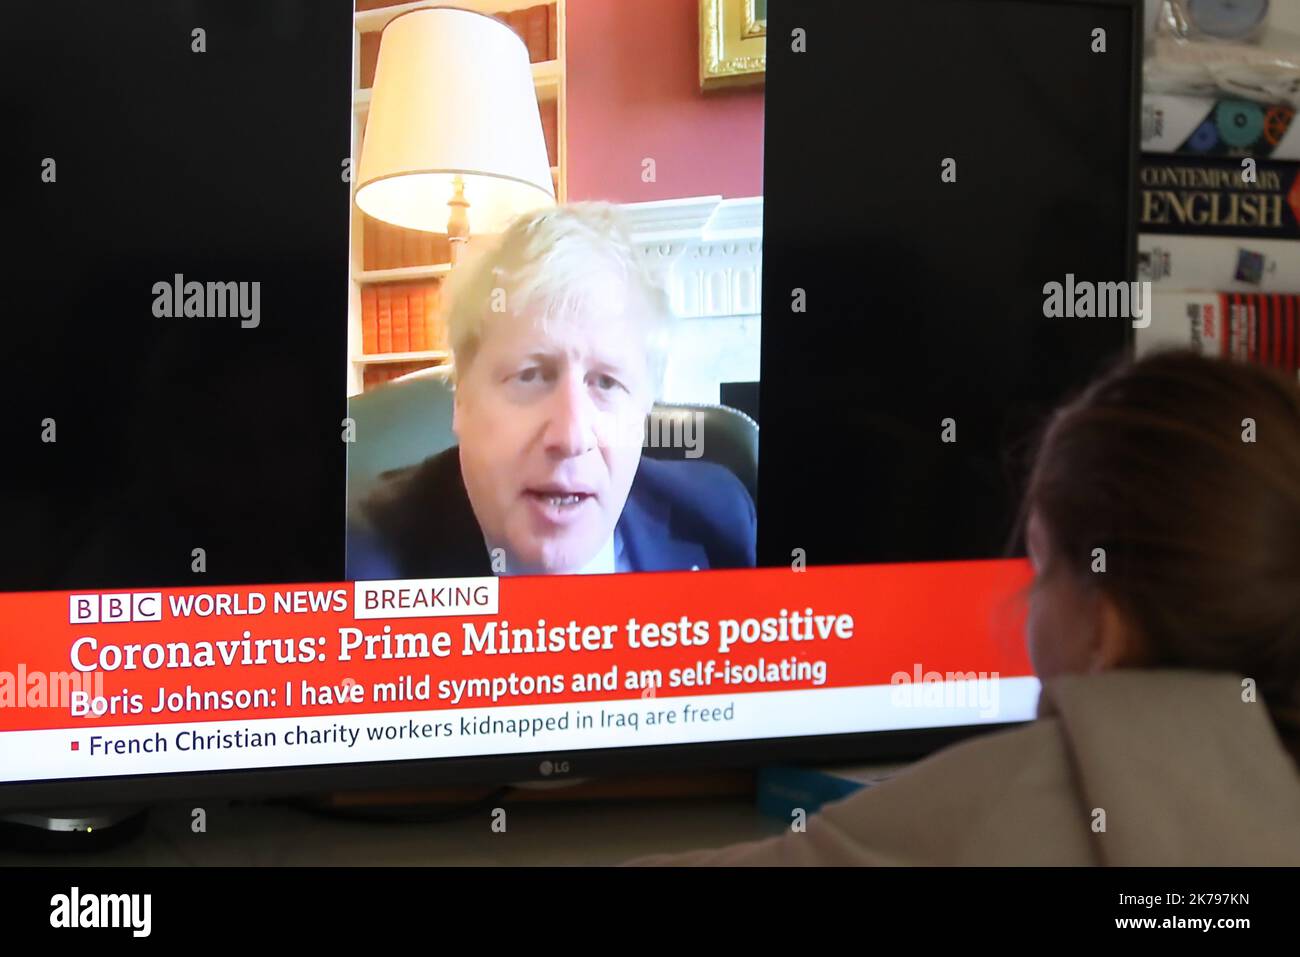 Une jeune fille regarde BBC World News comme une rupture de la presse que le Premier ministre britannique Boris Johnson a testé positif pour le coronavirus après avoir éprouvé des symptômes légers Banque D'Images